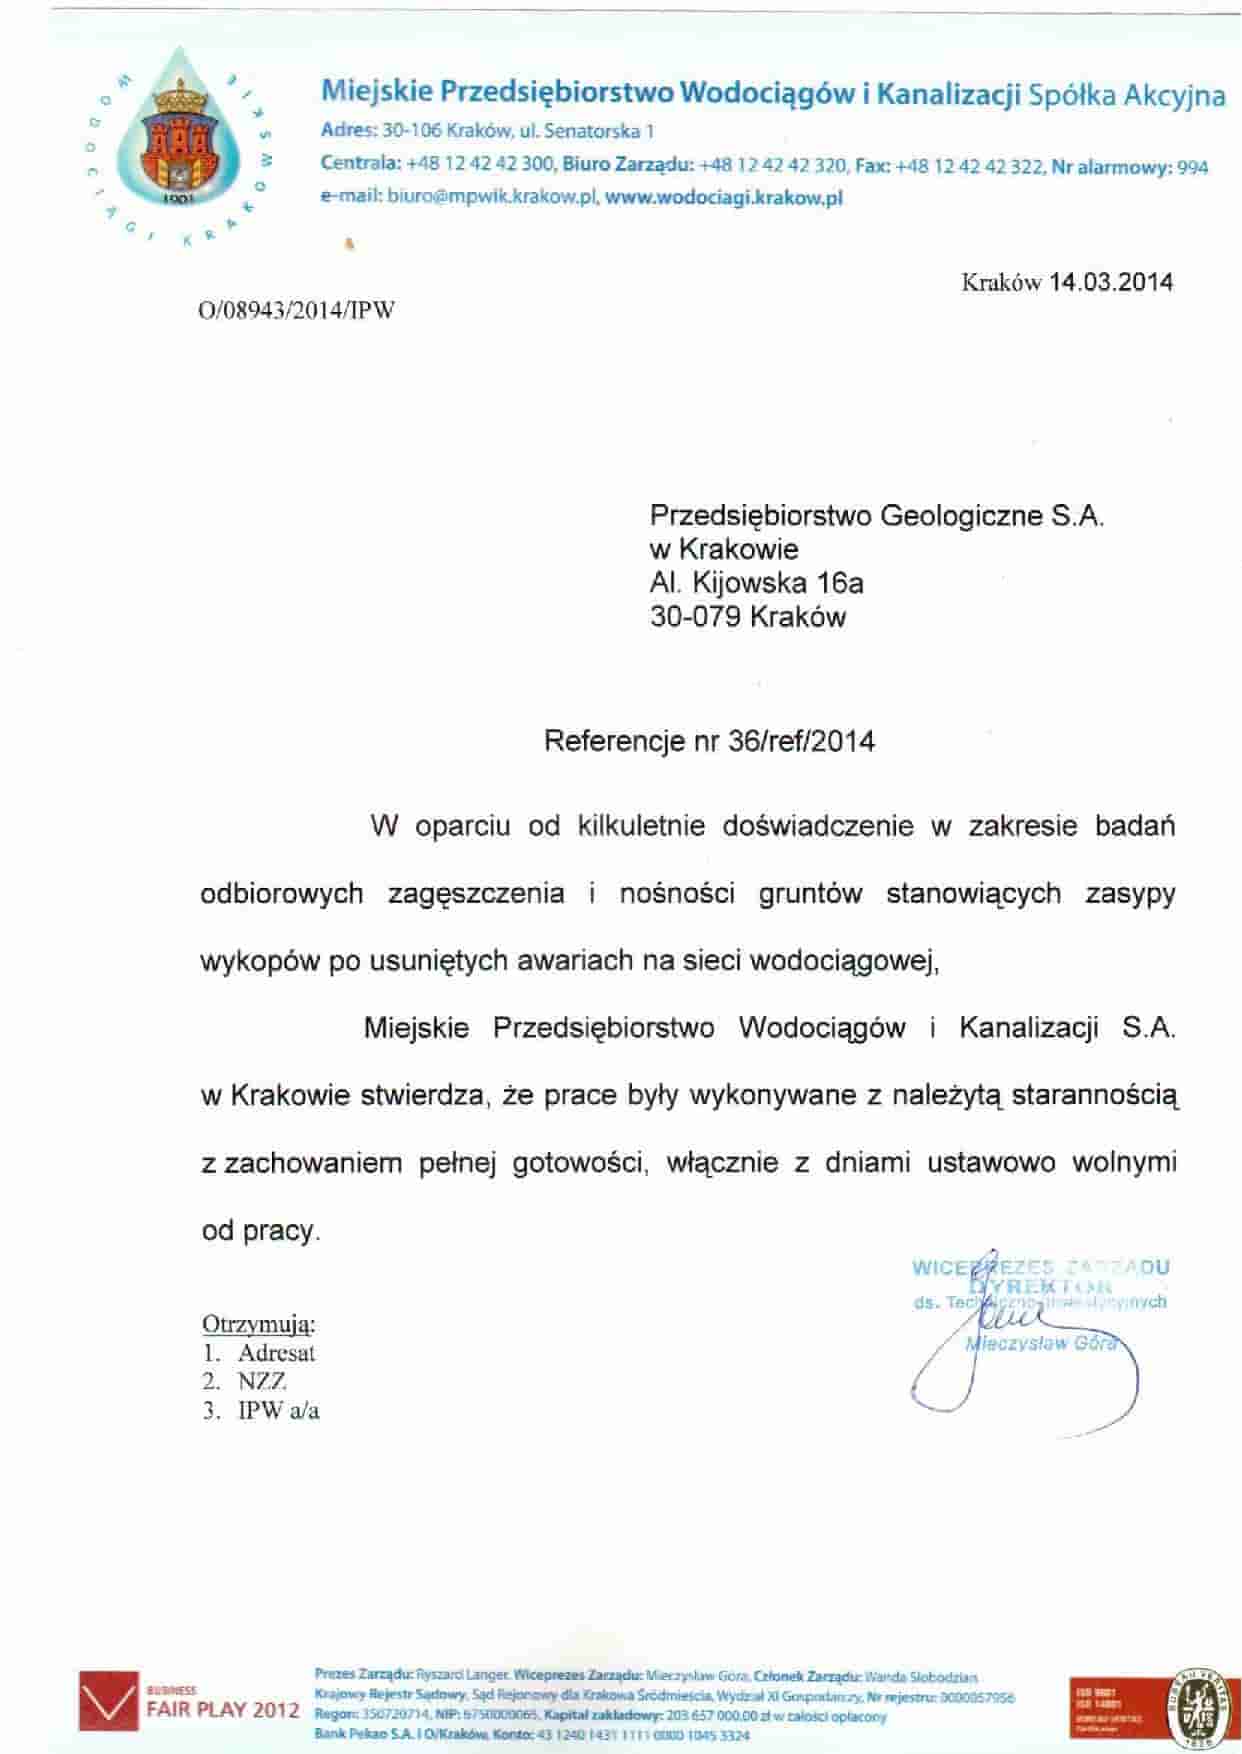 MPWiK S.A.- Miejskie Przedsiębiorstwo Wodociągów i Kanalizacji